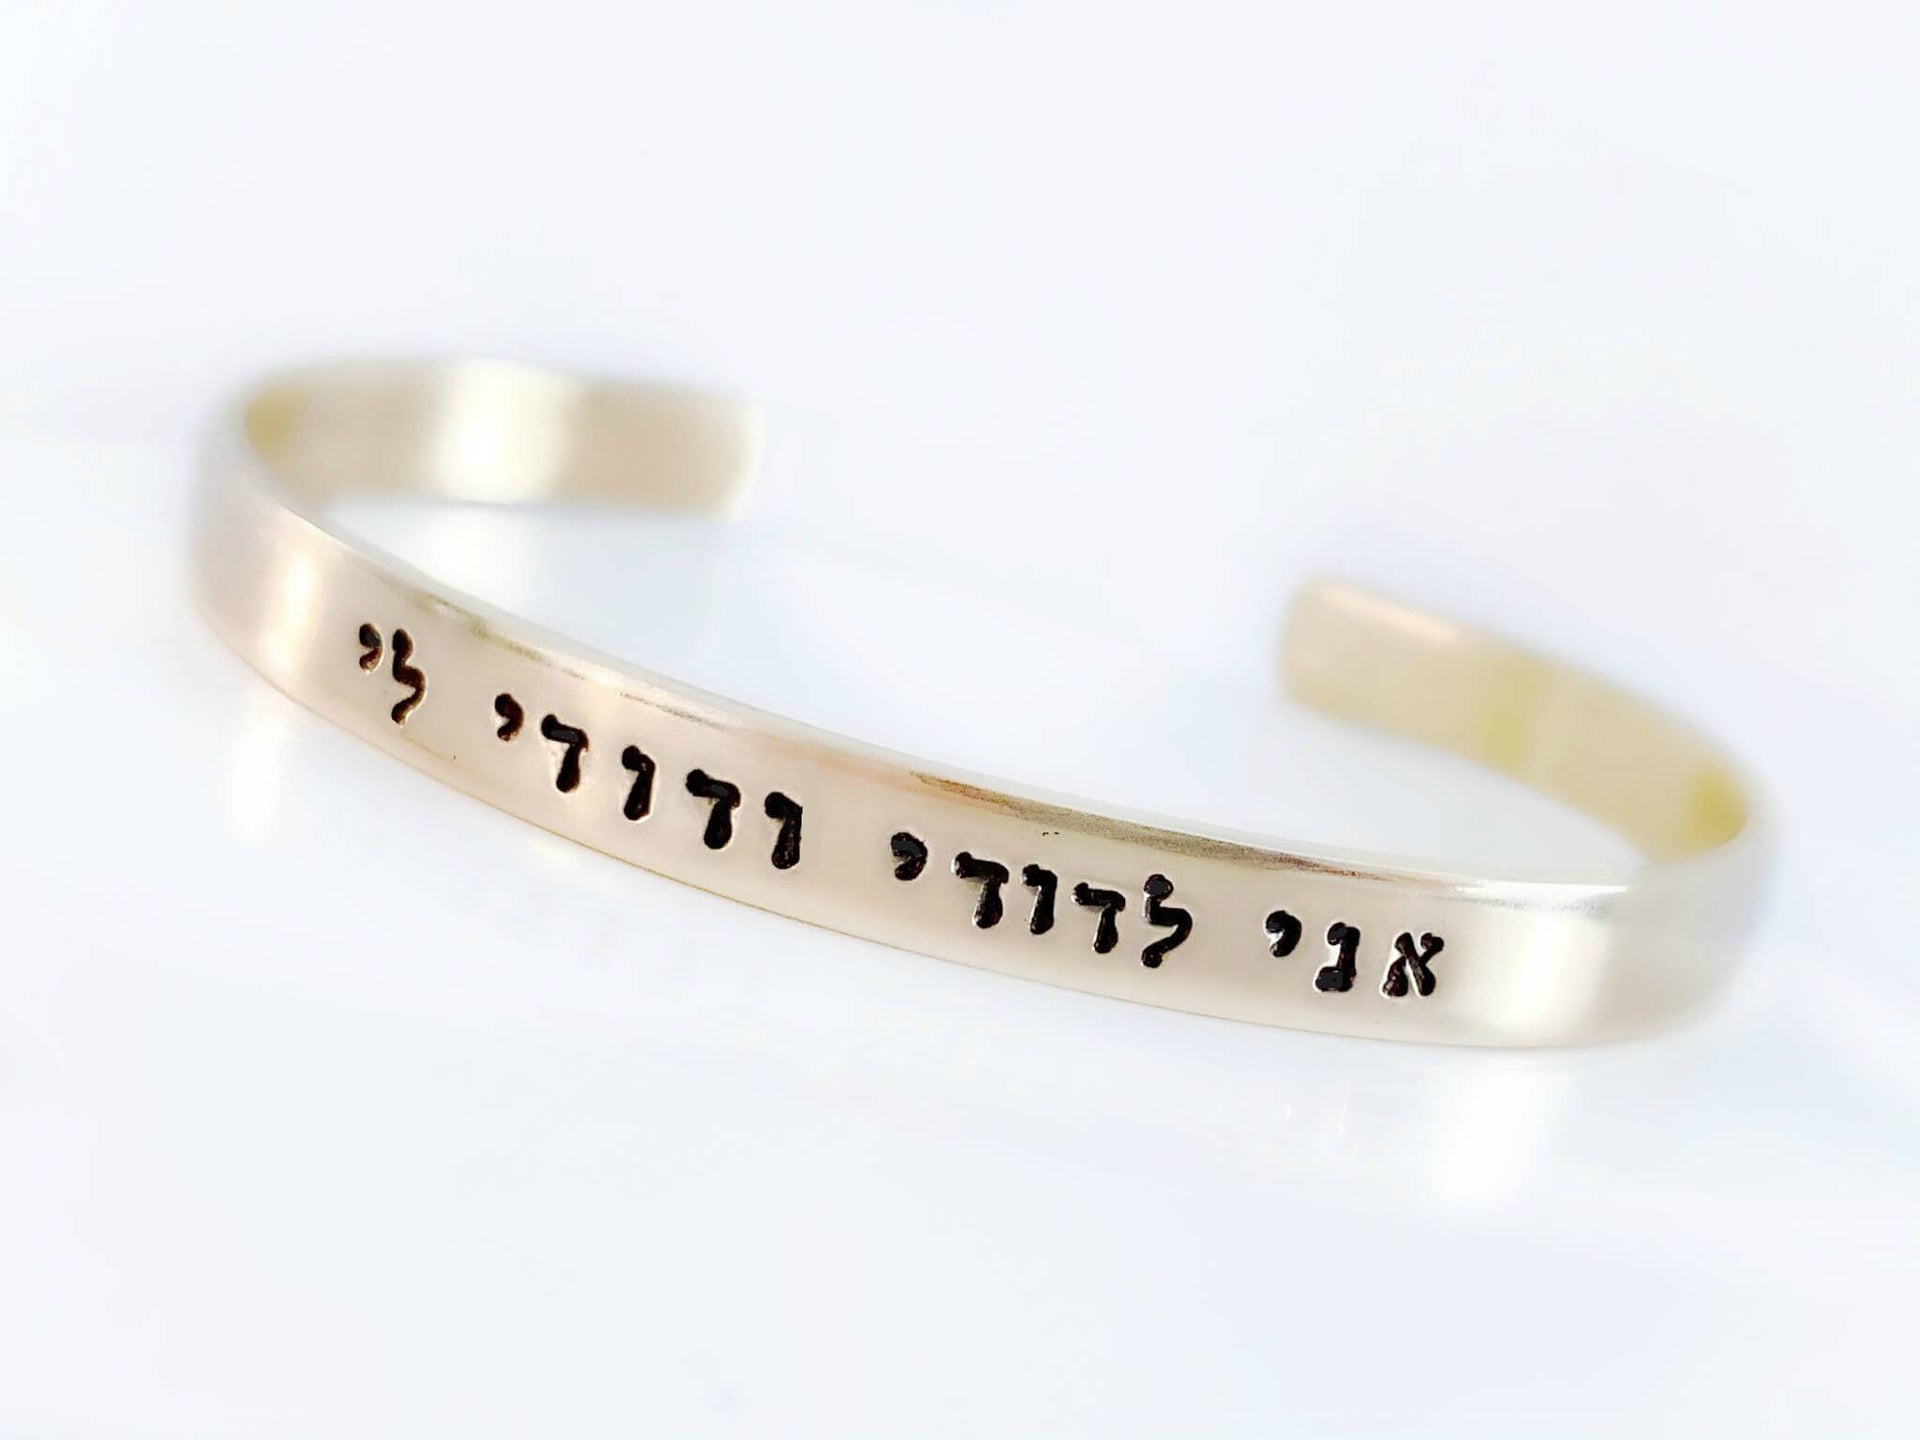 Everything Beautiful Bracelets Beloved Hebrew Bracelet - Brass, Copper or Aluminum